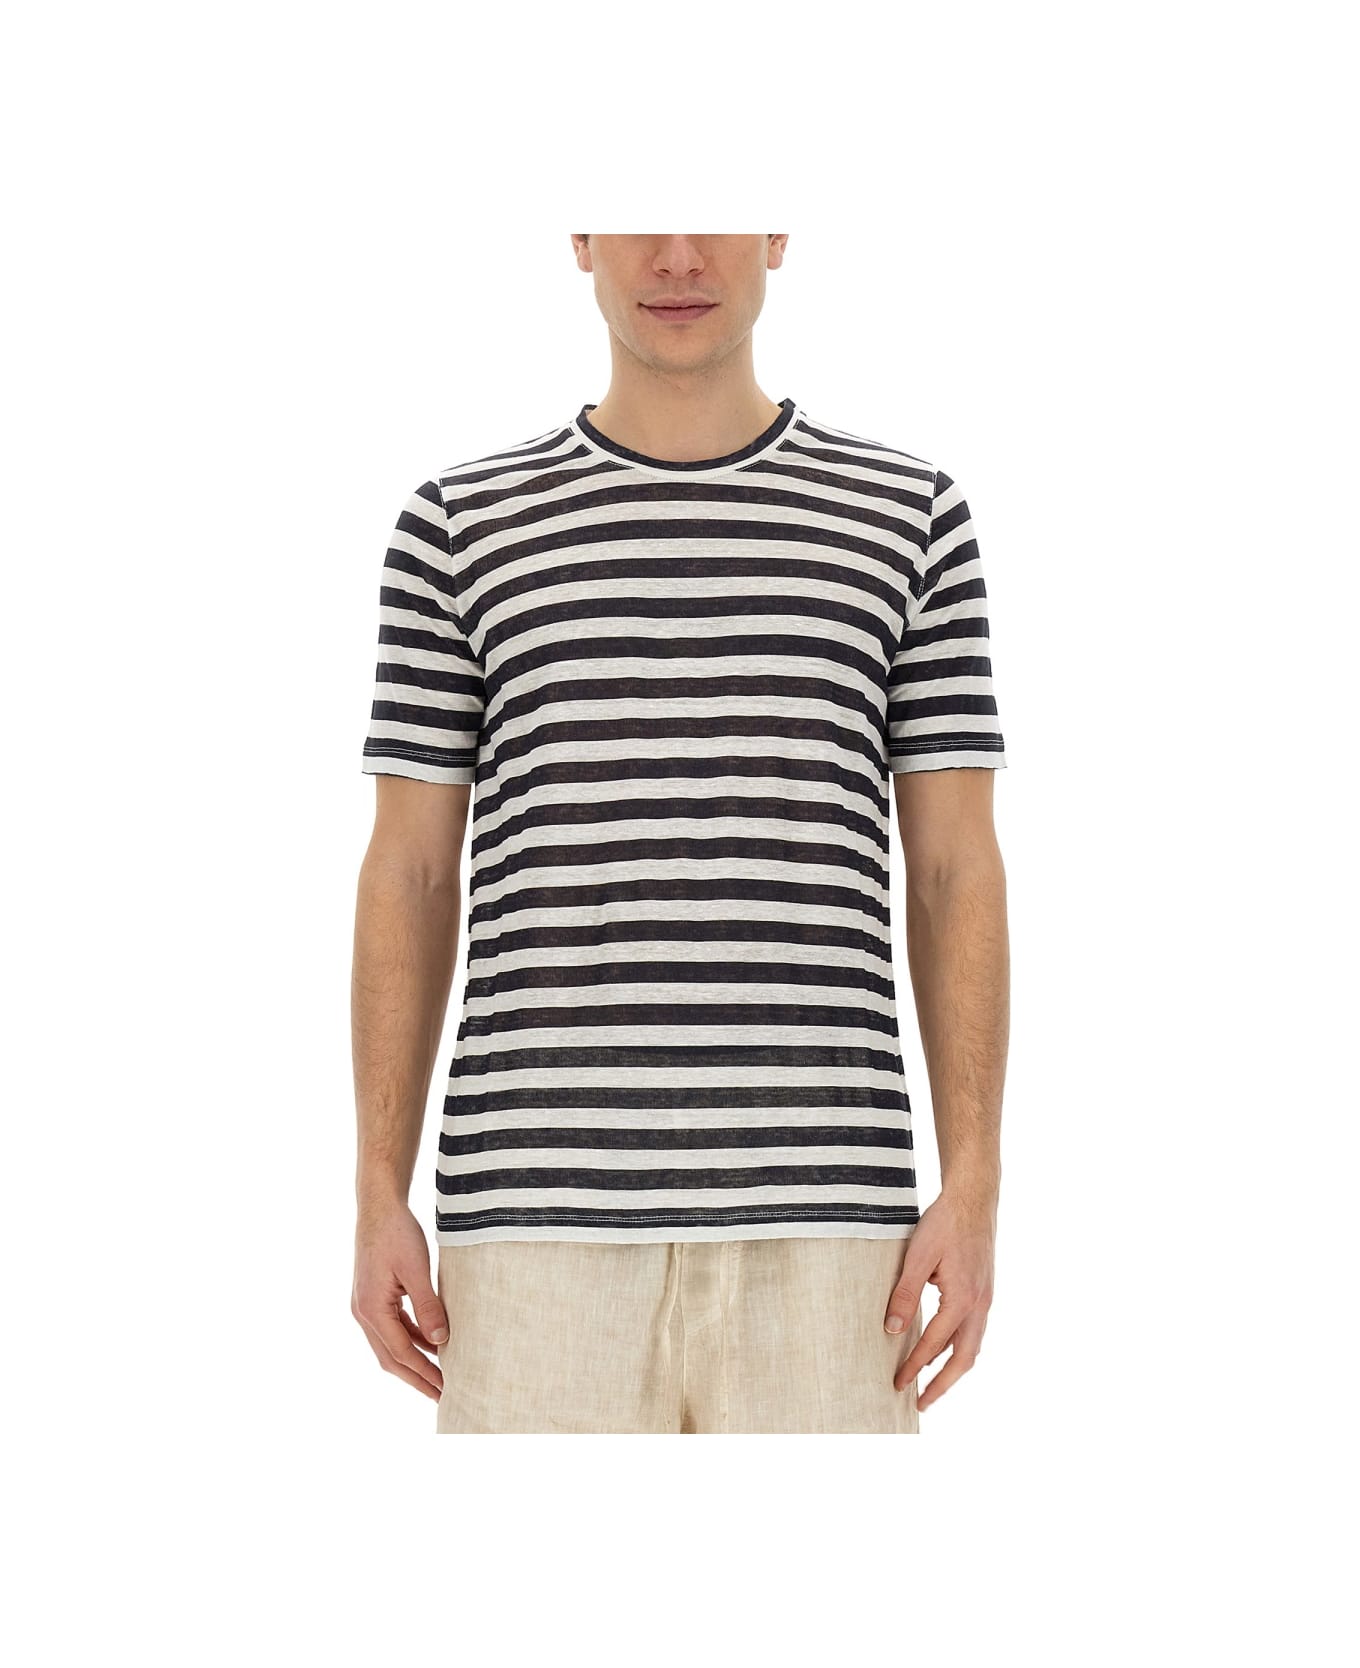 120% Lino Striped T-shirt - MULTICOLOUR